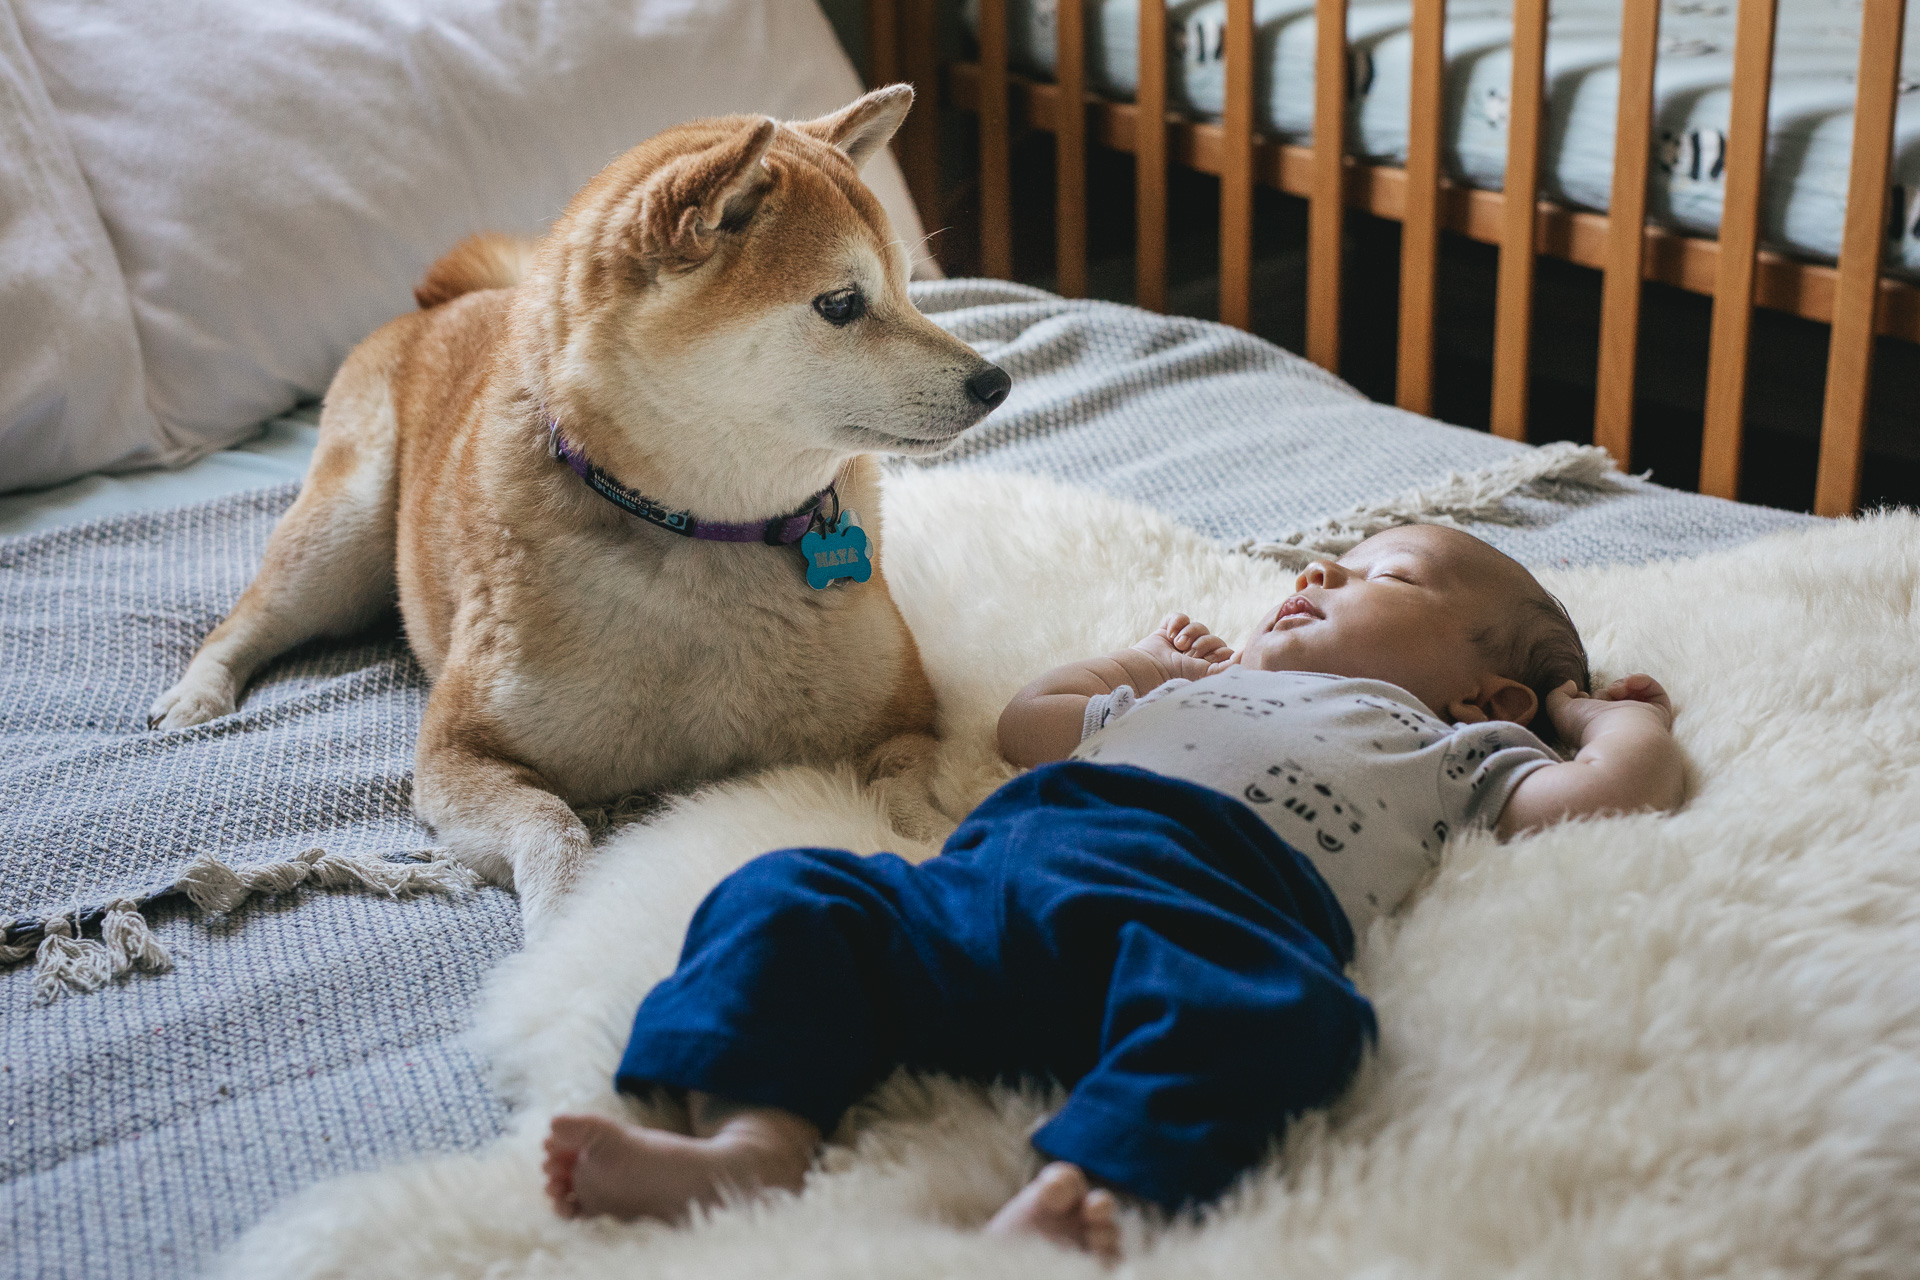 A Shiba Inu dog looking at a baby